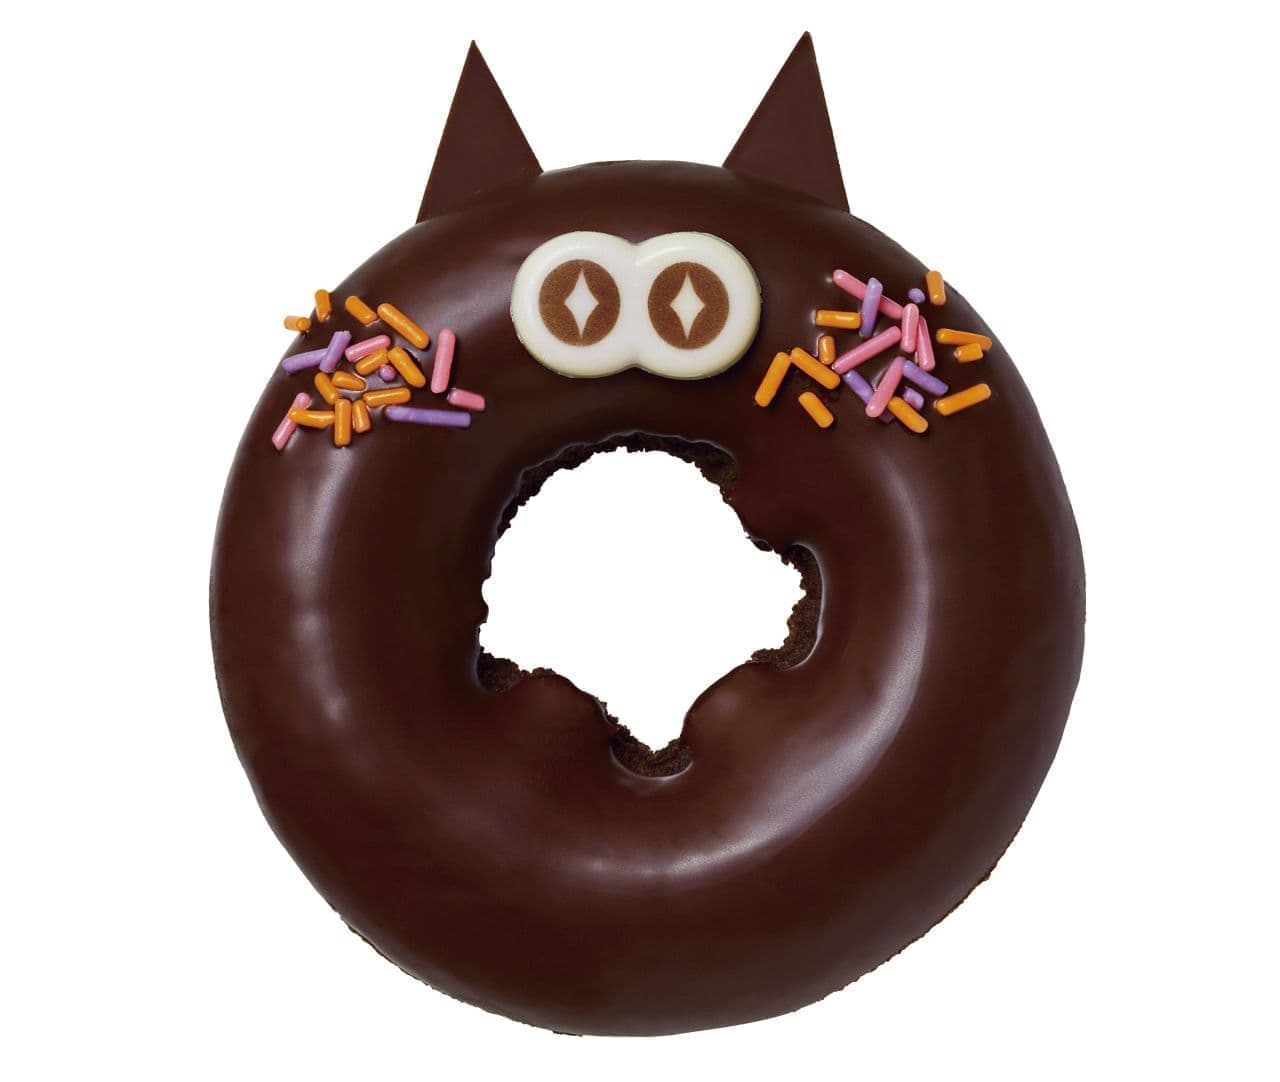 Mr. Donut "Makuro Choco Cat